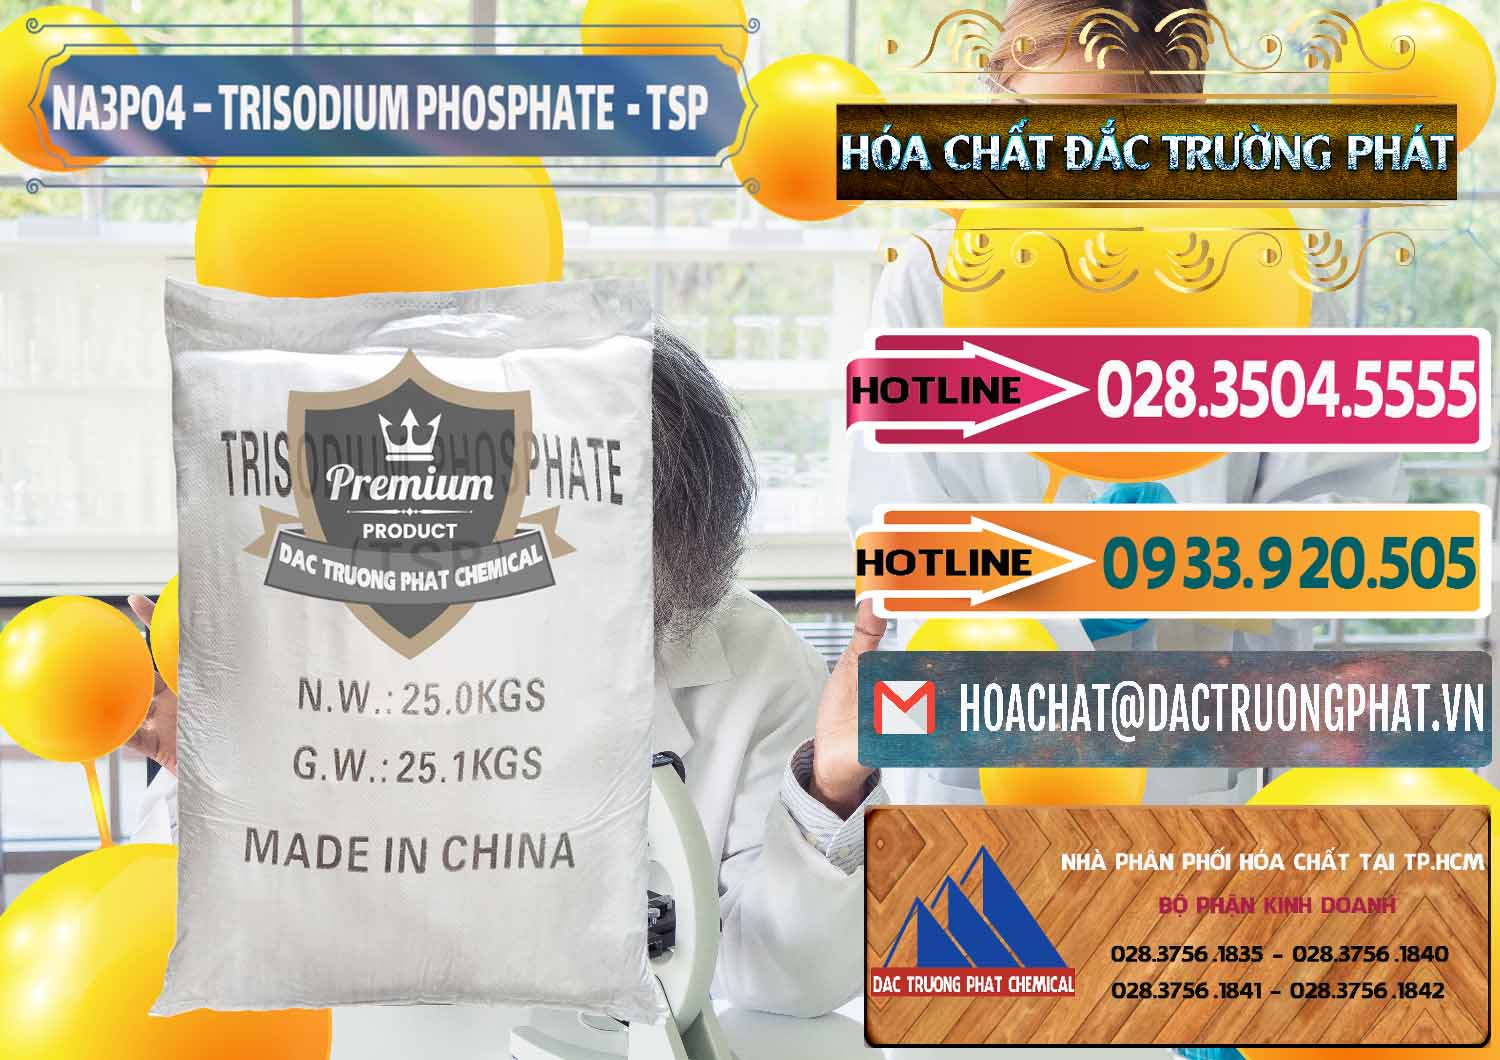 Công ty chuyên kinh doanh và bán Na3PO4 – Trisodium Phosphate Trung Quốc China TSP - 0103 - Công ty chuyên cung ứng và phân phối hóa chất tại TP.HCM - dactruongphat.vn